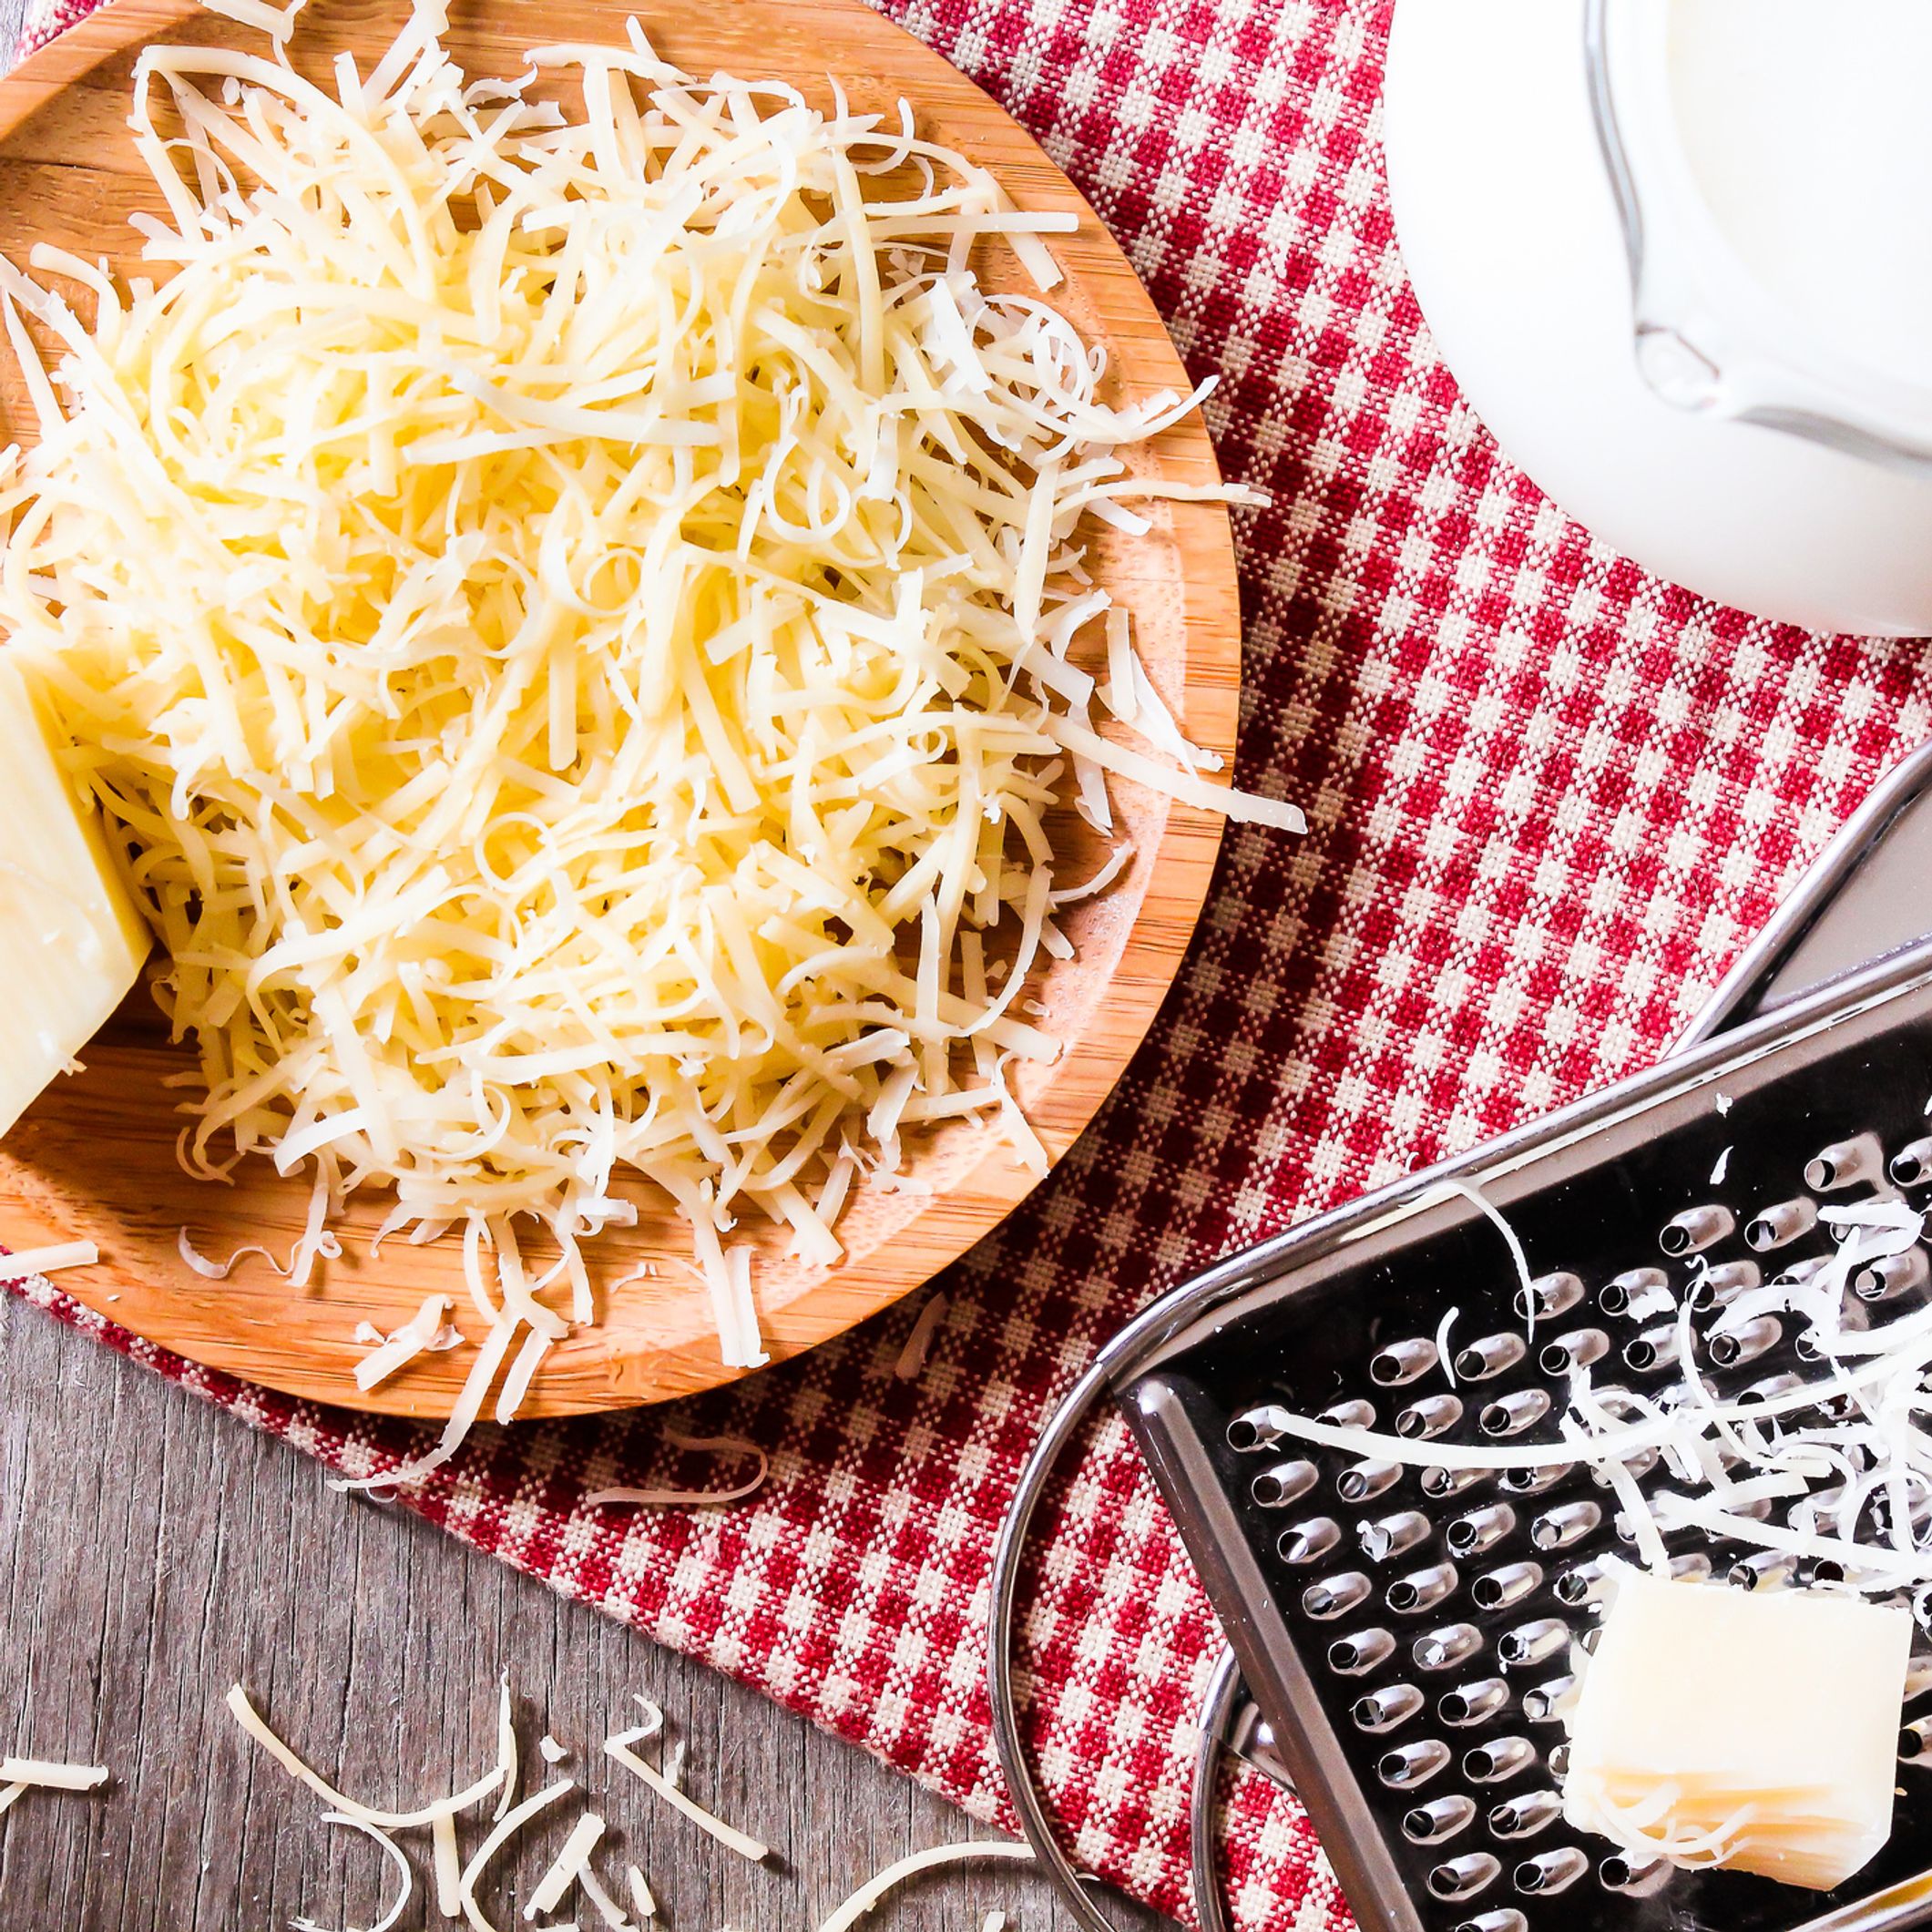 Comment conserver le fromage râpé une fois ouvert ?